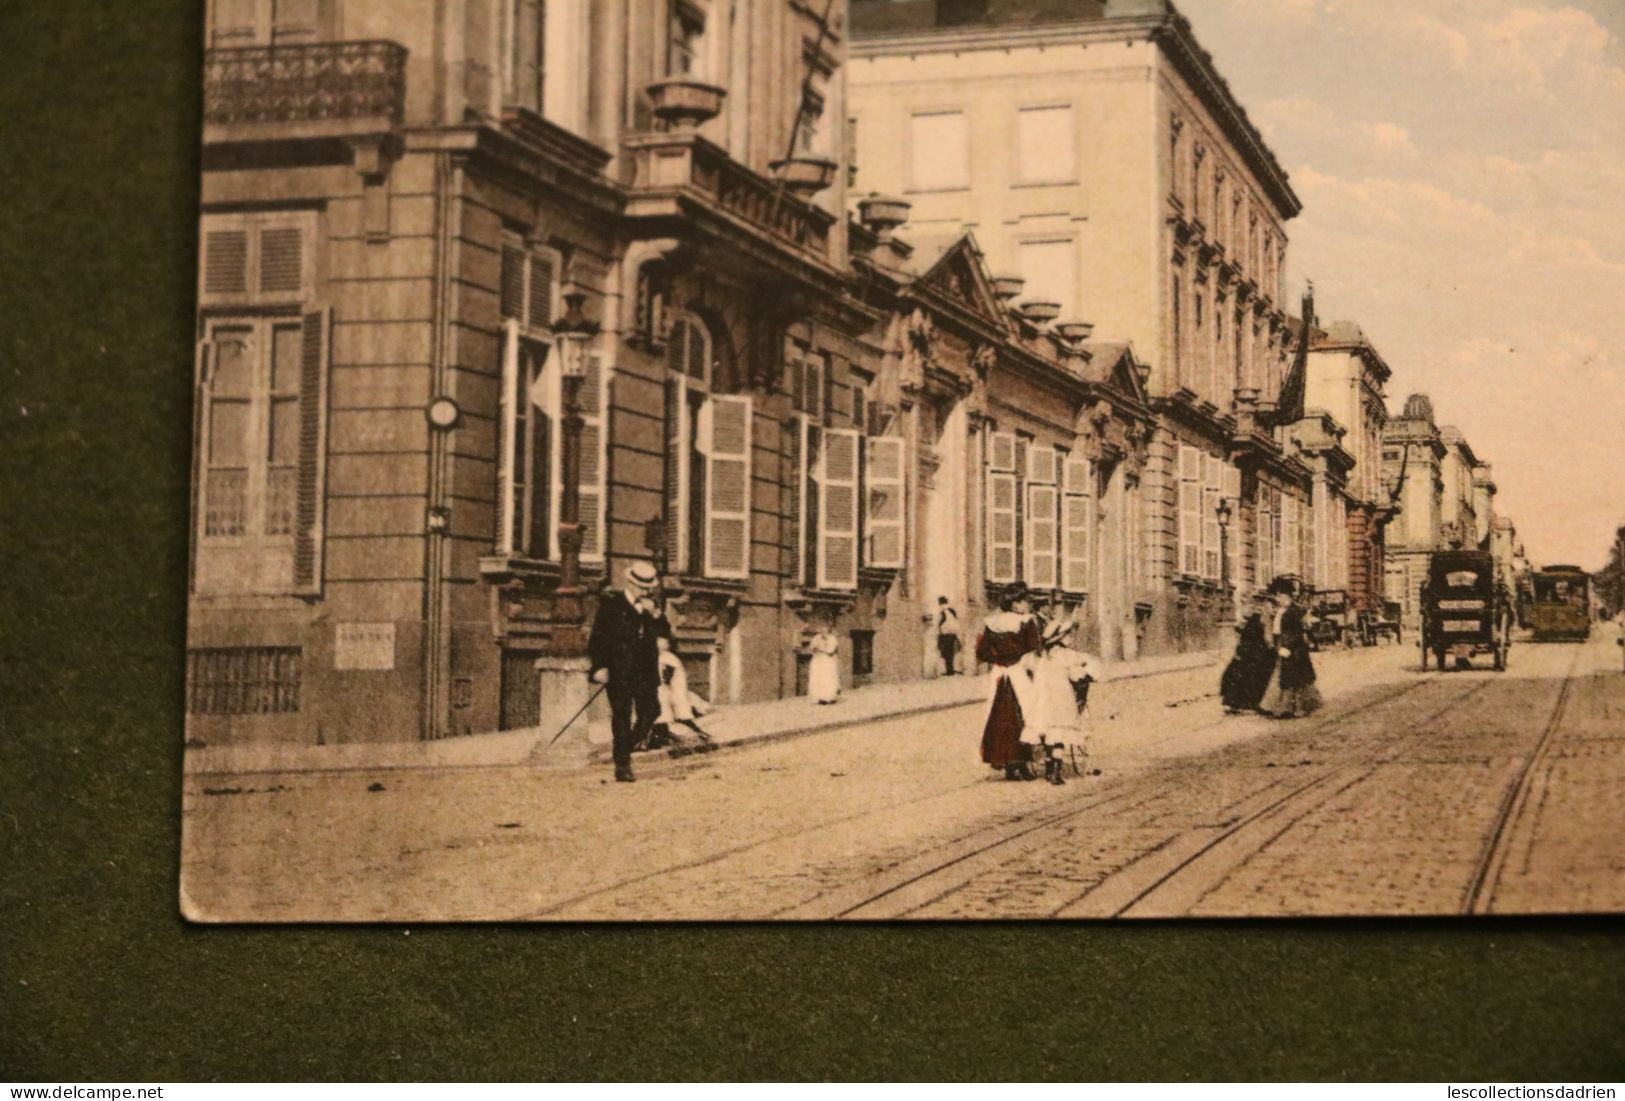 Carte Postale Bruxelles Rue De La Loi - Envoi En Temps De Guerre WWI - 8 Centimes Occupation OC13 - Squares